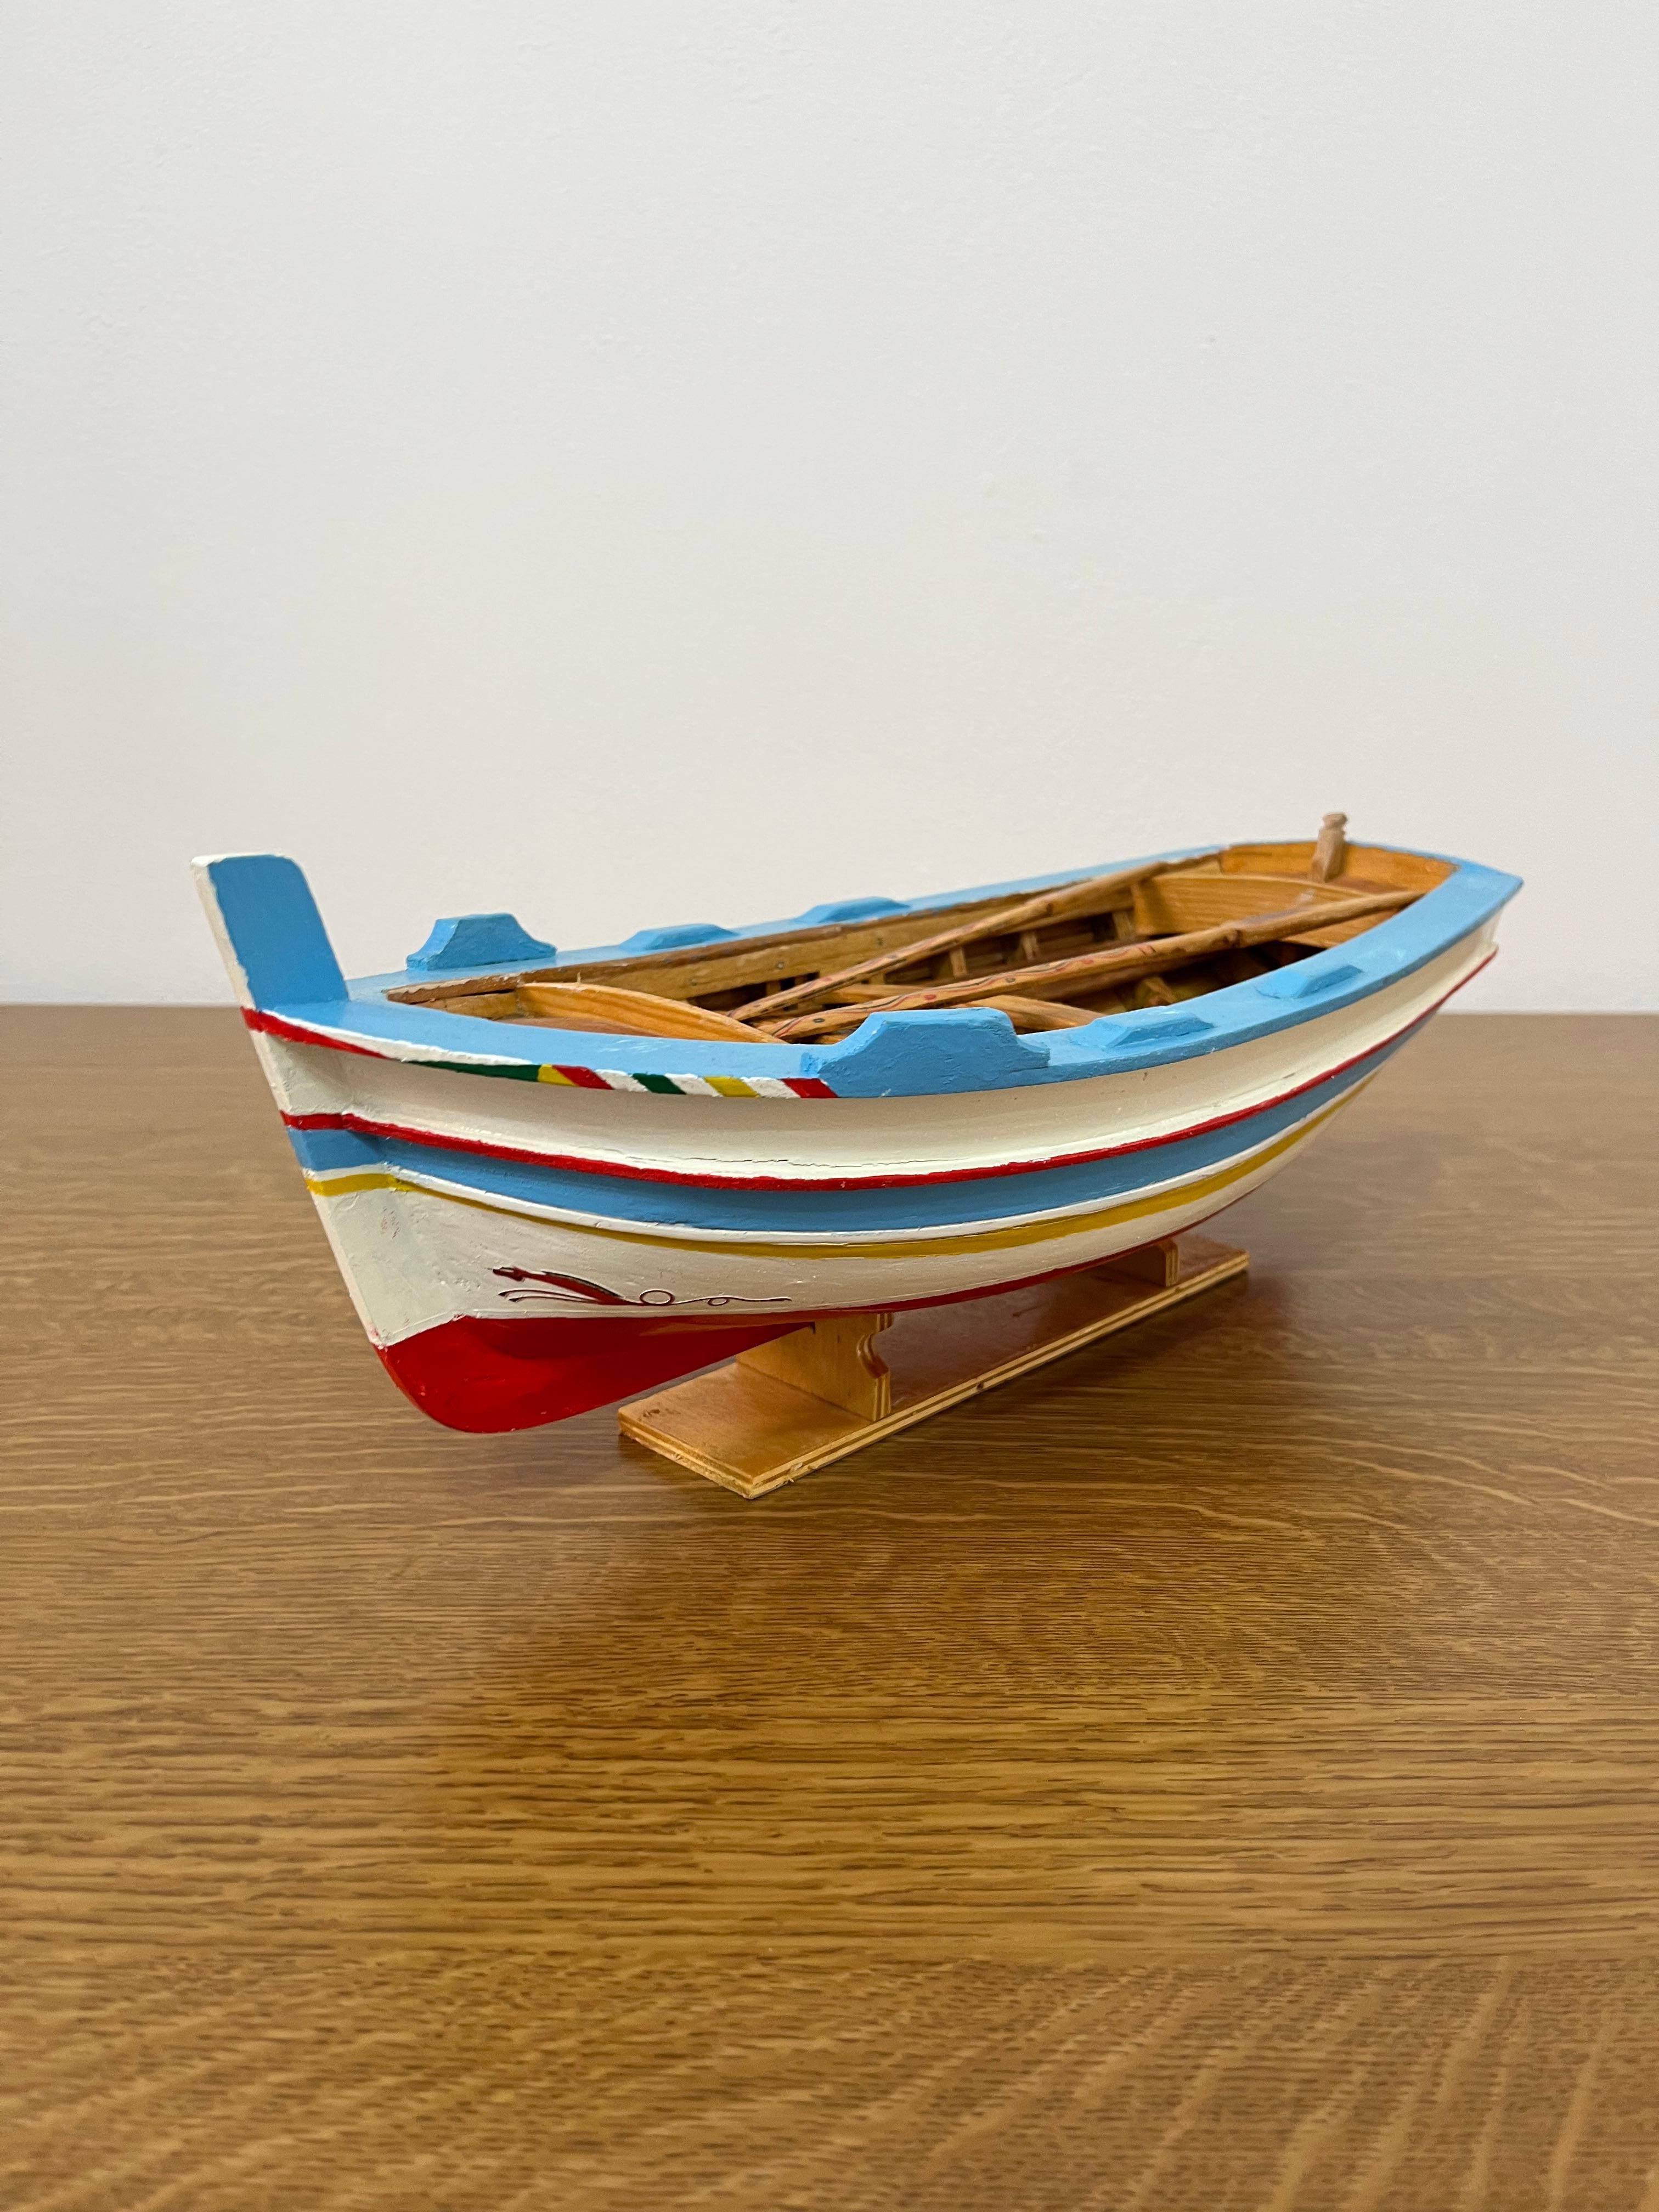 Miniaturmodell eines sizilianischen Fischerbootes, einer so genannten 